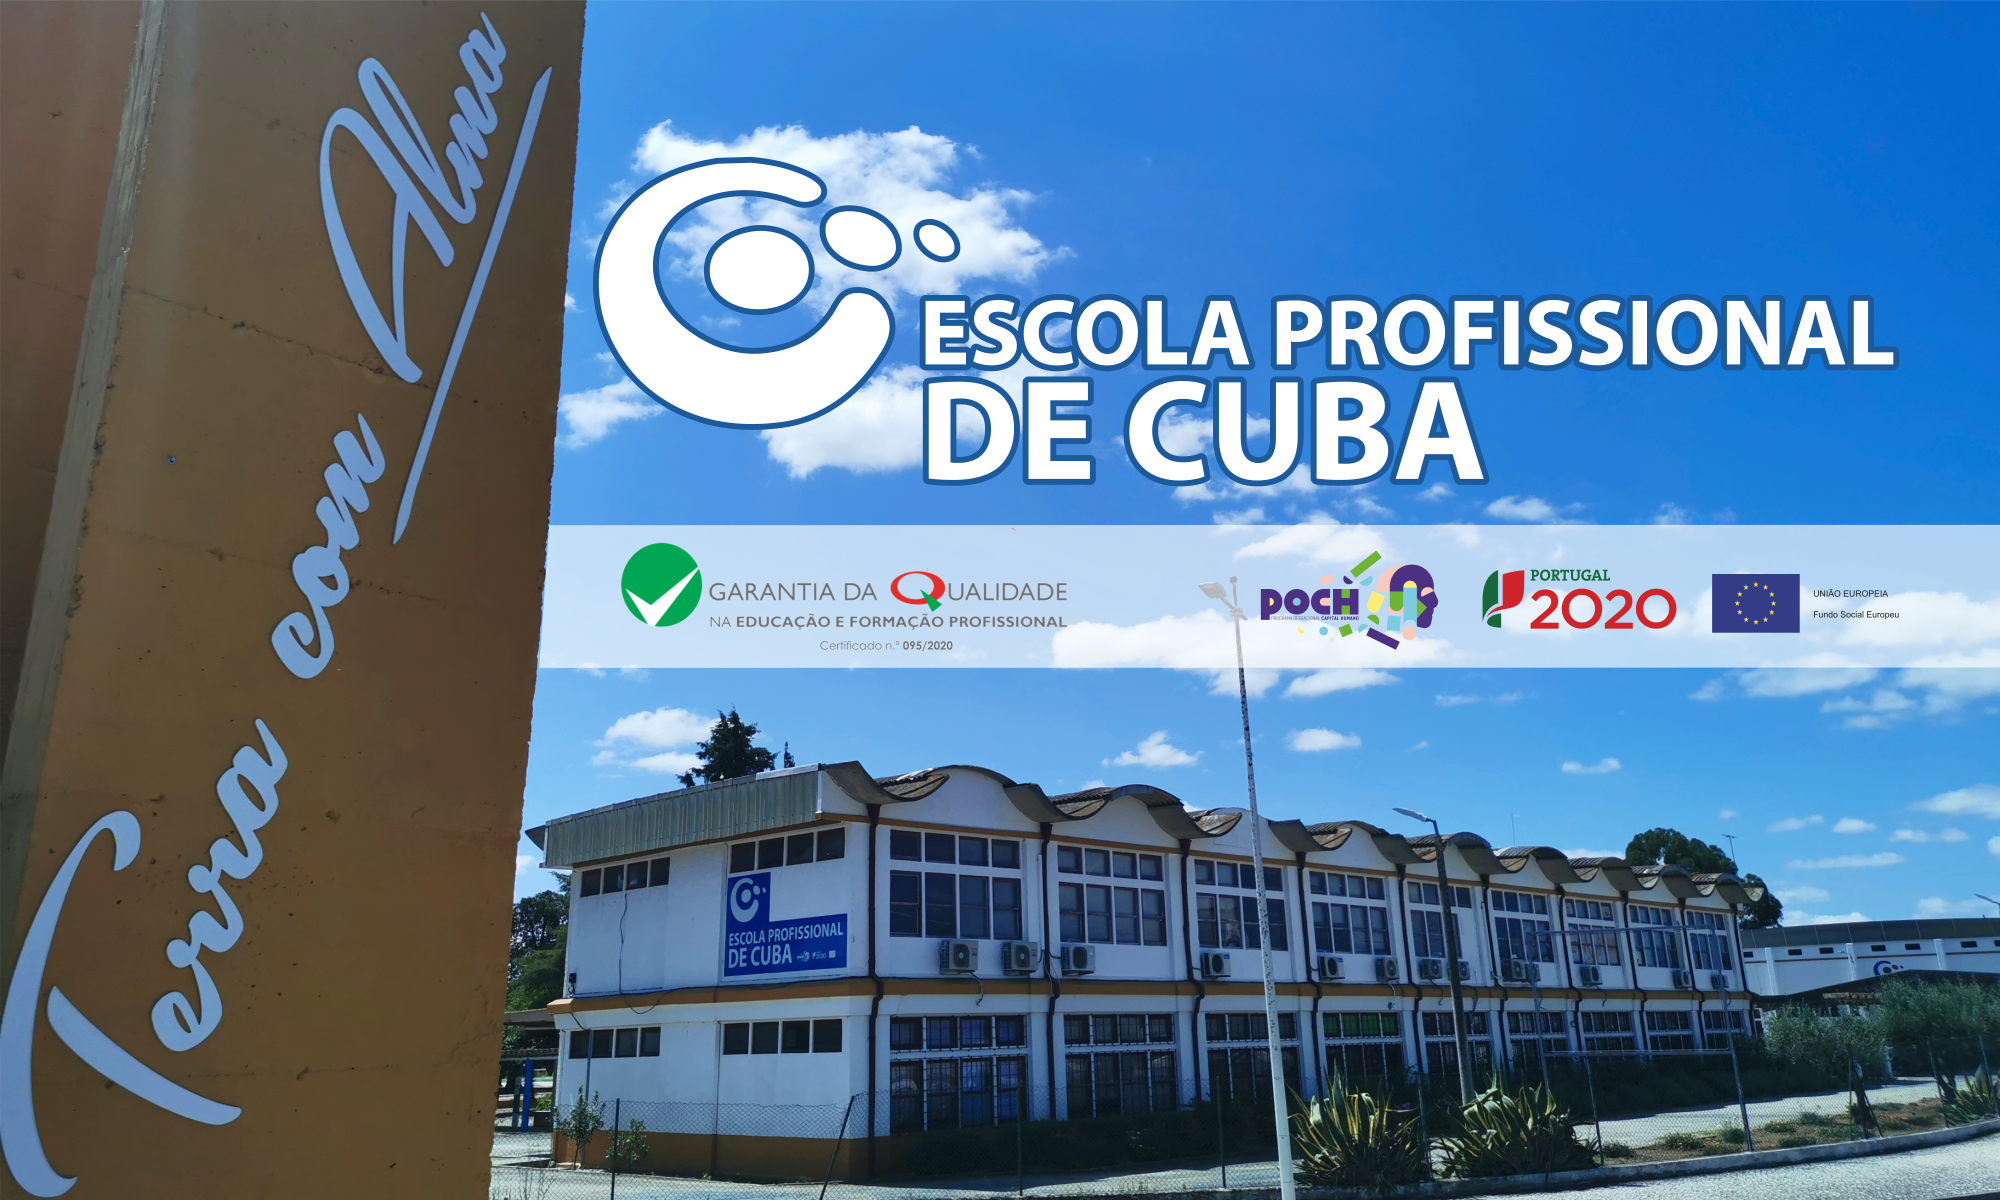 Escola Profissional de Cuba